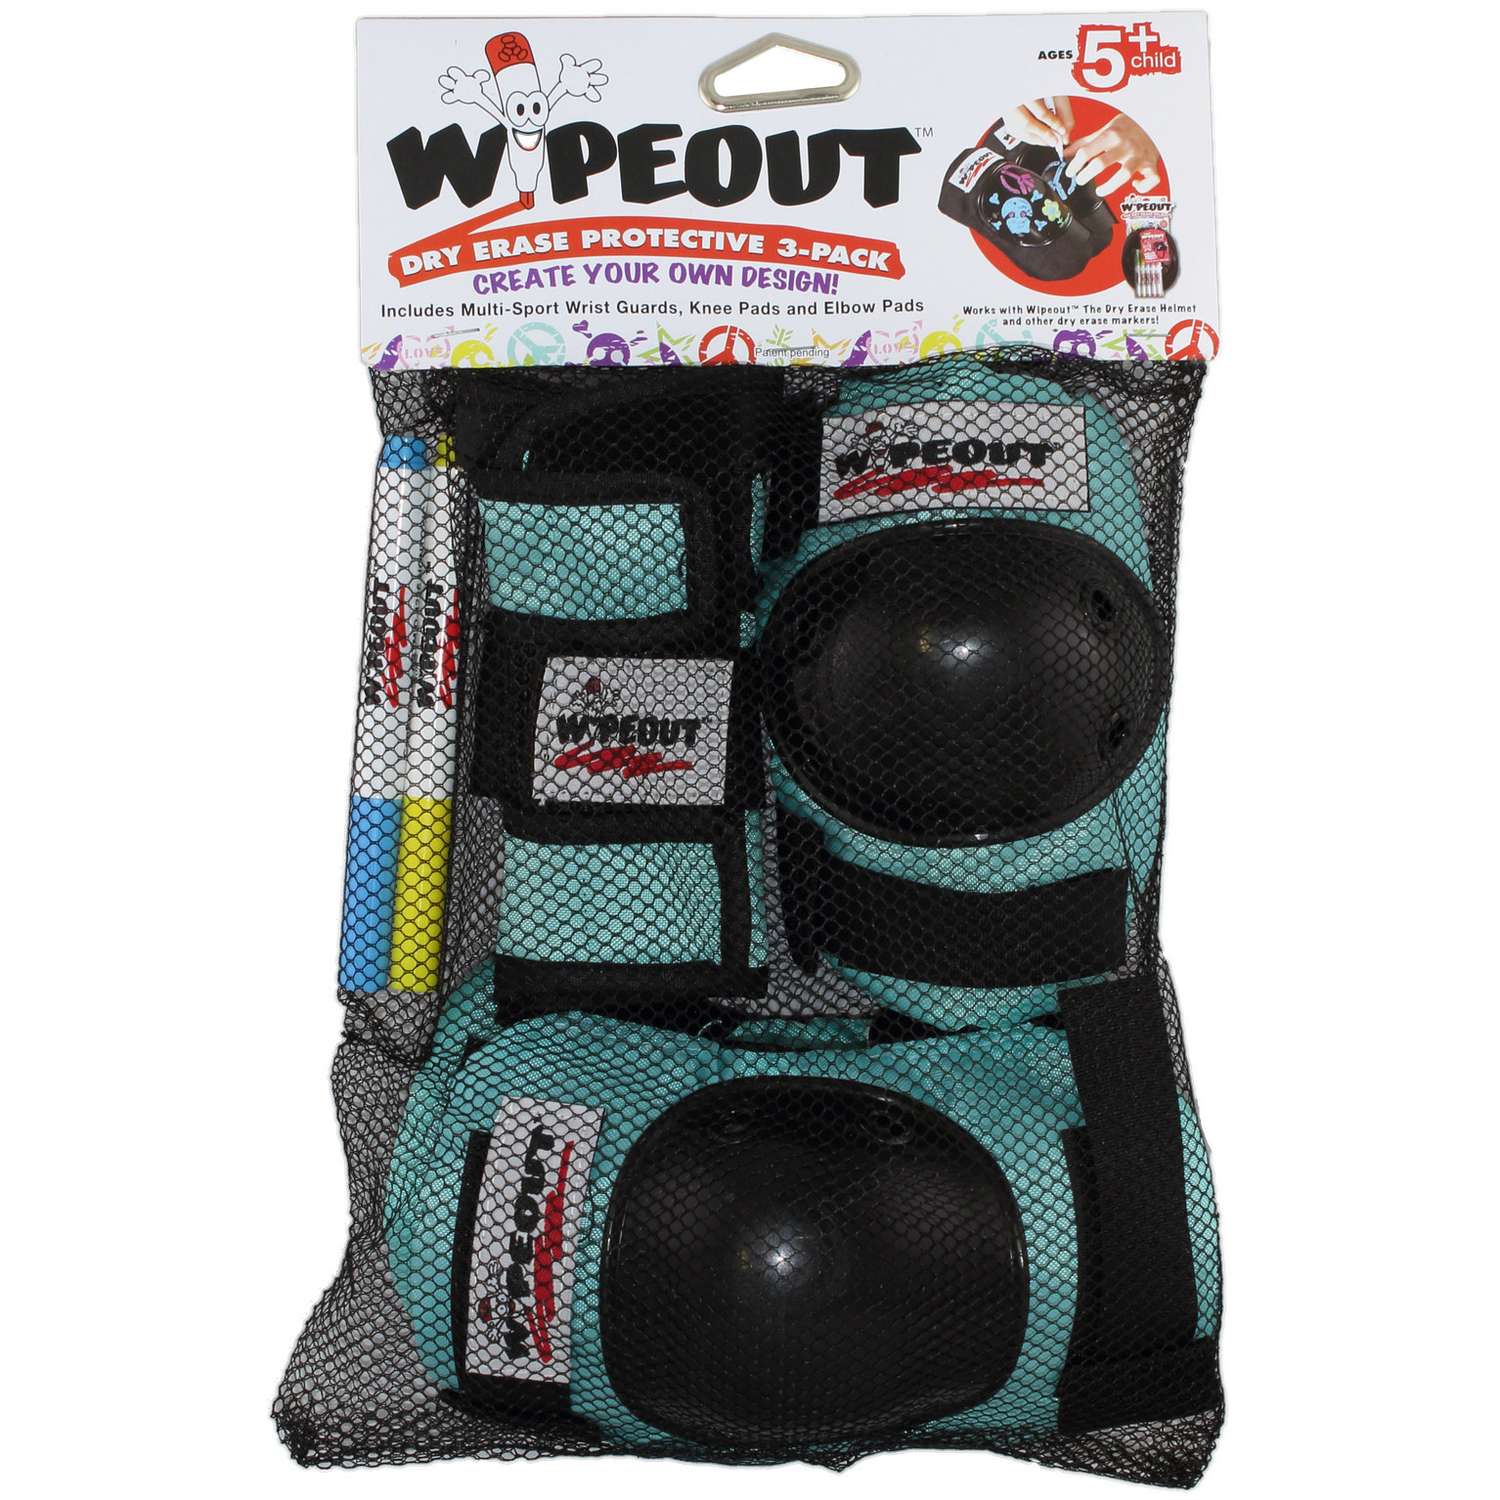 Комплект защиты 3-в-1 WIPEOUT Teal бирюзовый - с фломастерами и трафаретами - наколенники / налокотники / для запястья - фото 3